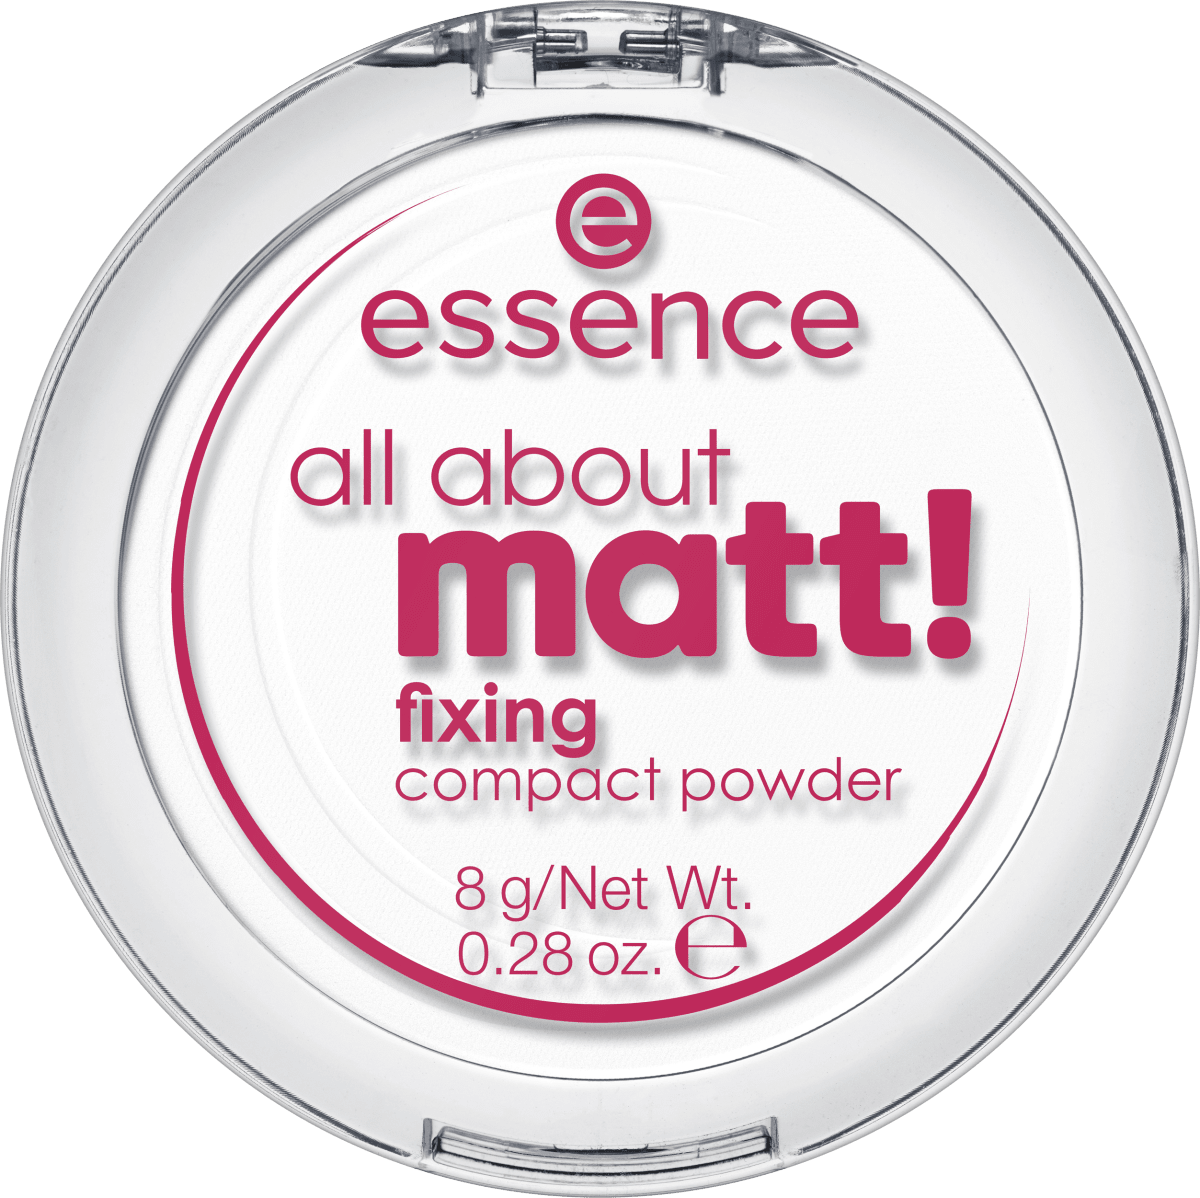 kaufen About Matt! g Kompakt Puder Fixing, essence günstig online dauerhaft 8 All